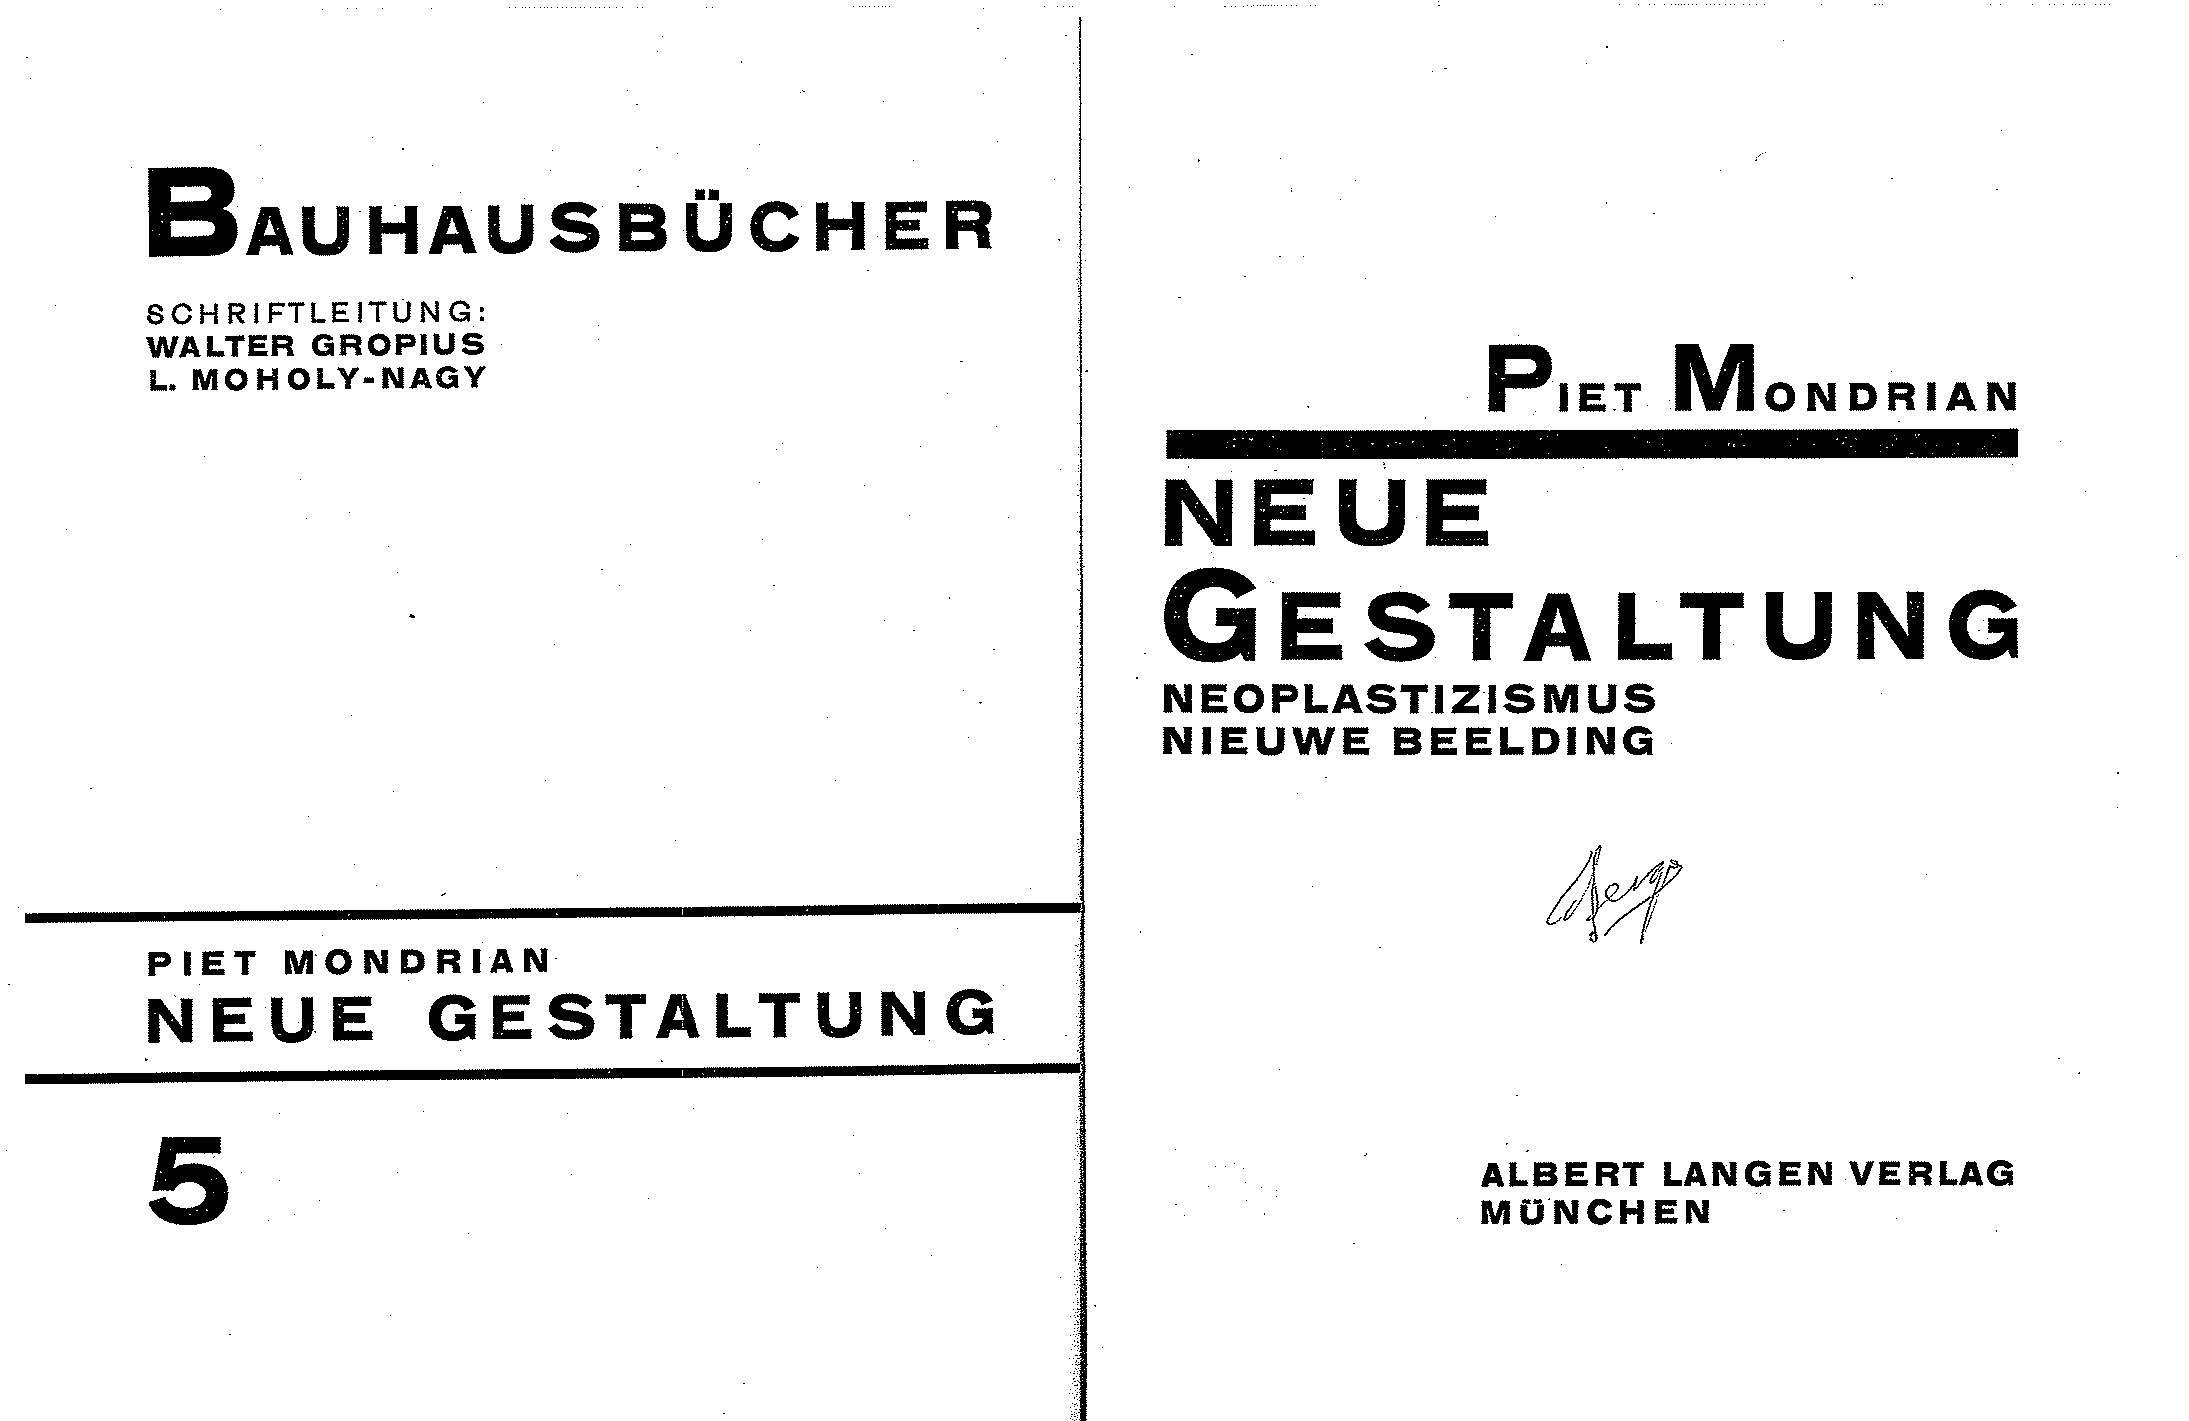 Neue Gestaltung, Neoplastizimus, Nieuwe Beelding / Piet Mondrian. — München : Albert Langen Verlag, 1925. — 67 s., ill. — (Bauhausbücher 5).